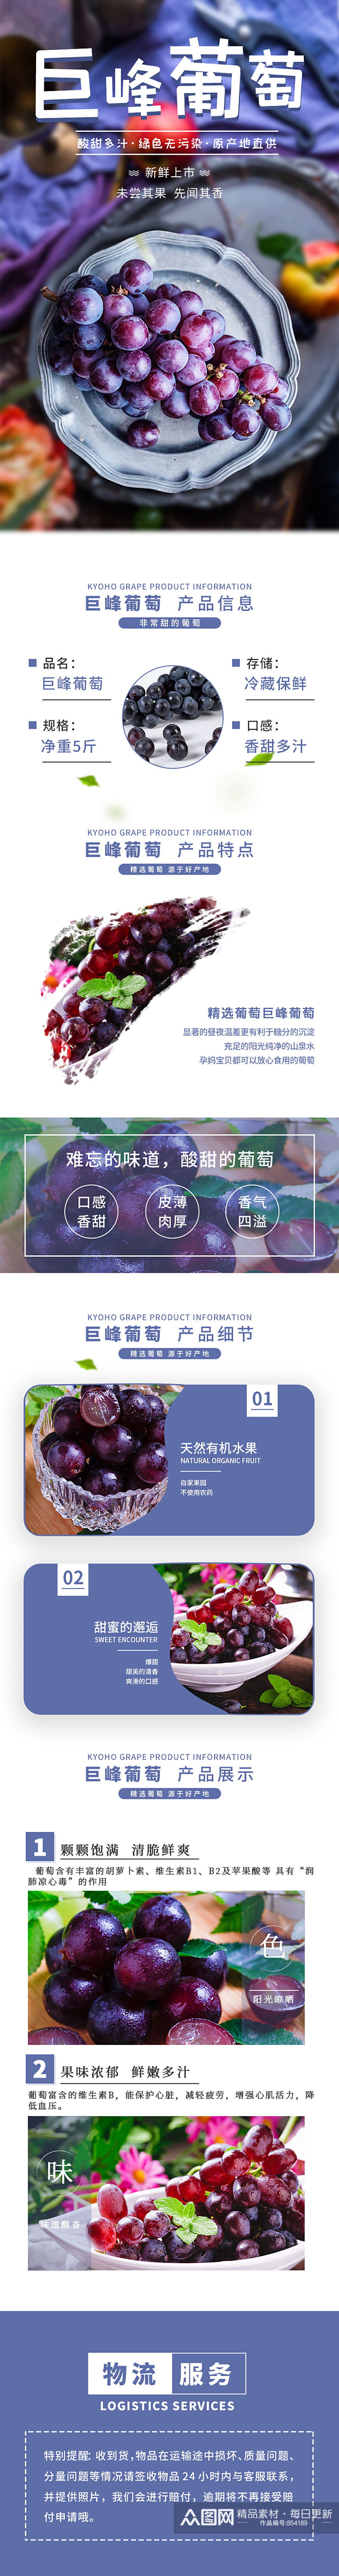 小清新紫色巨峰葡萄电商淘宝详情页素材